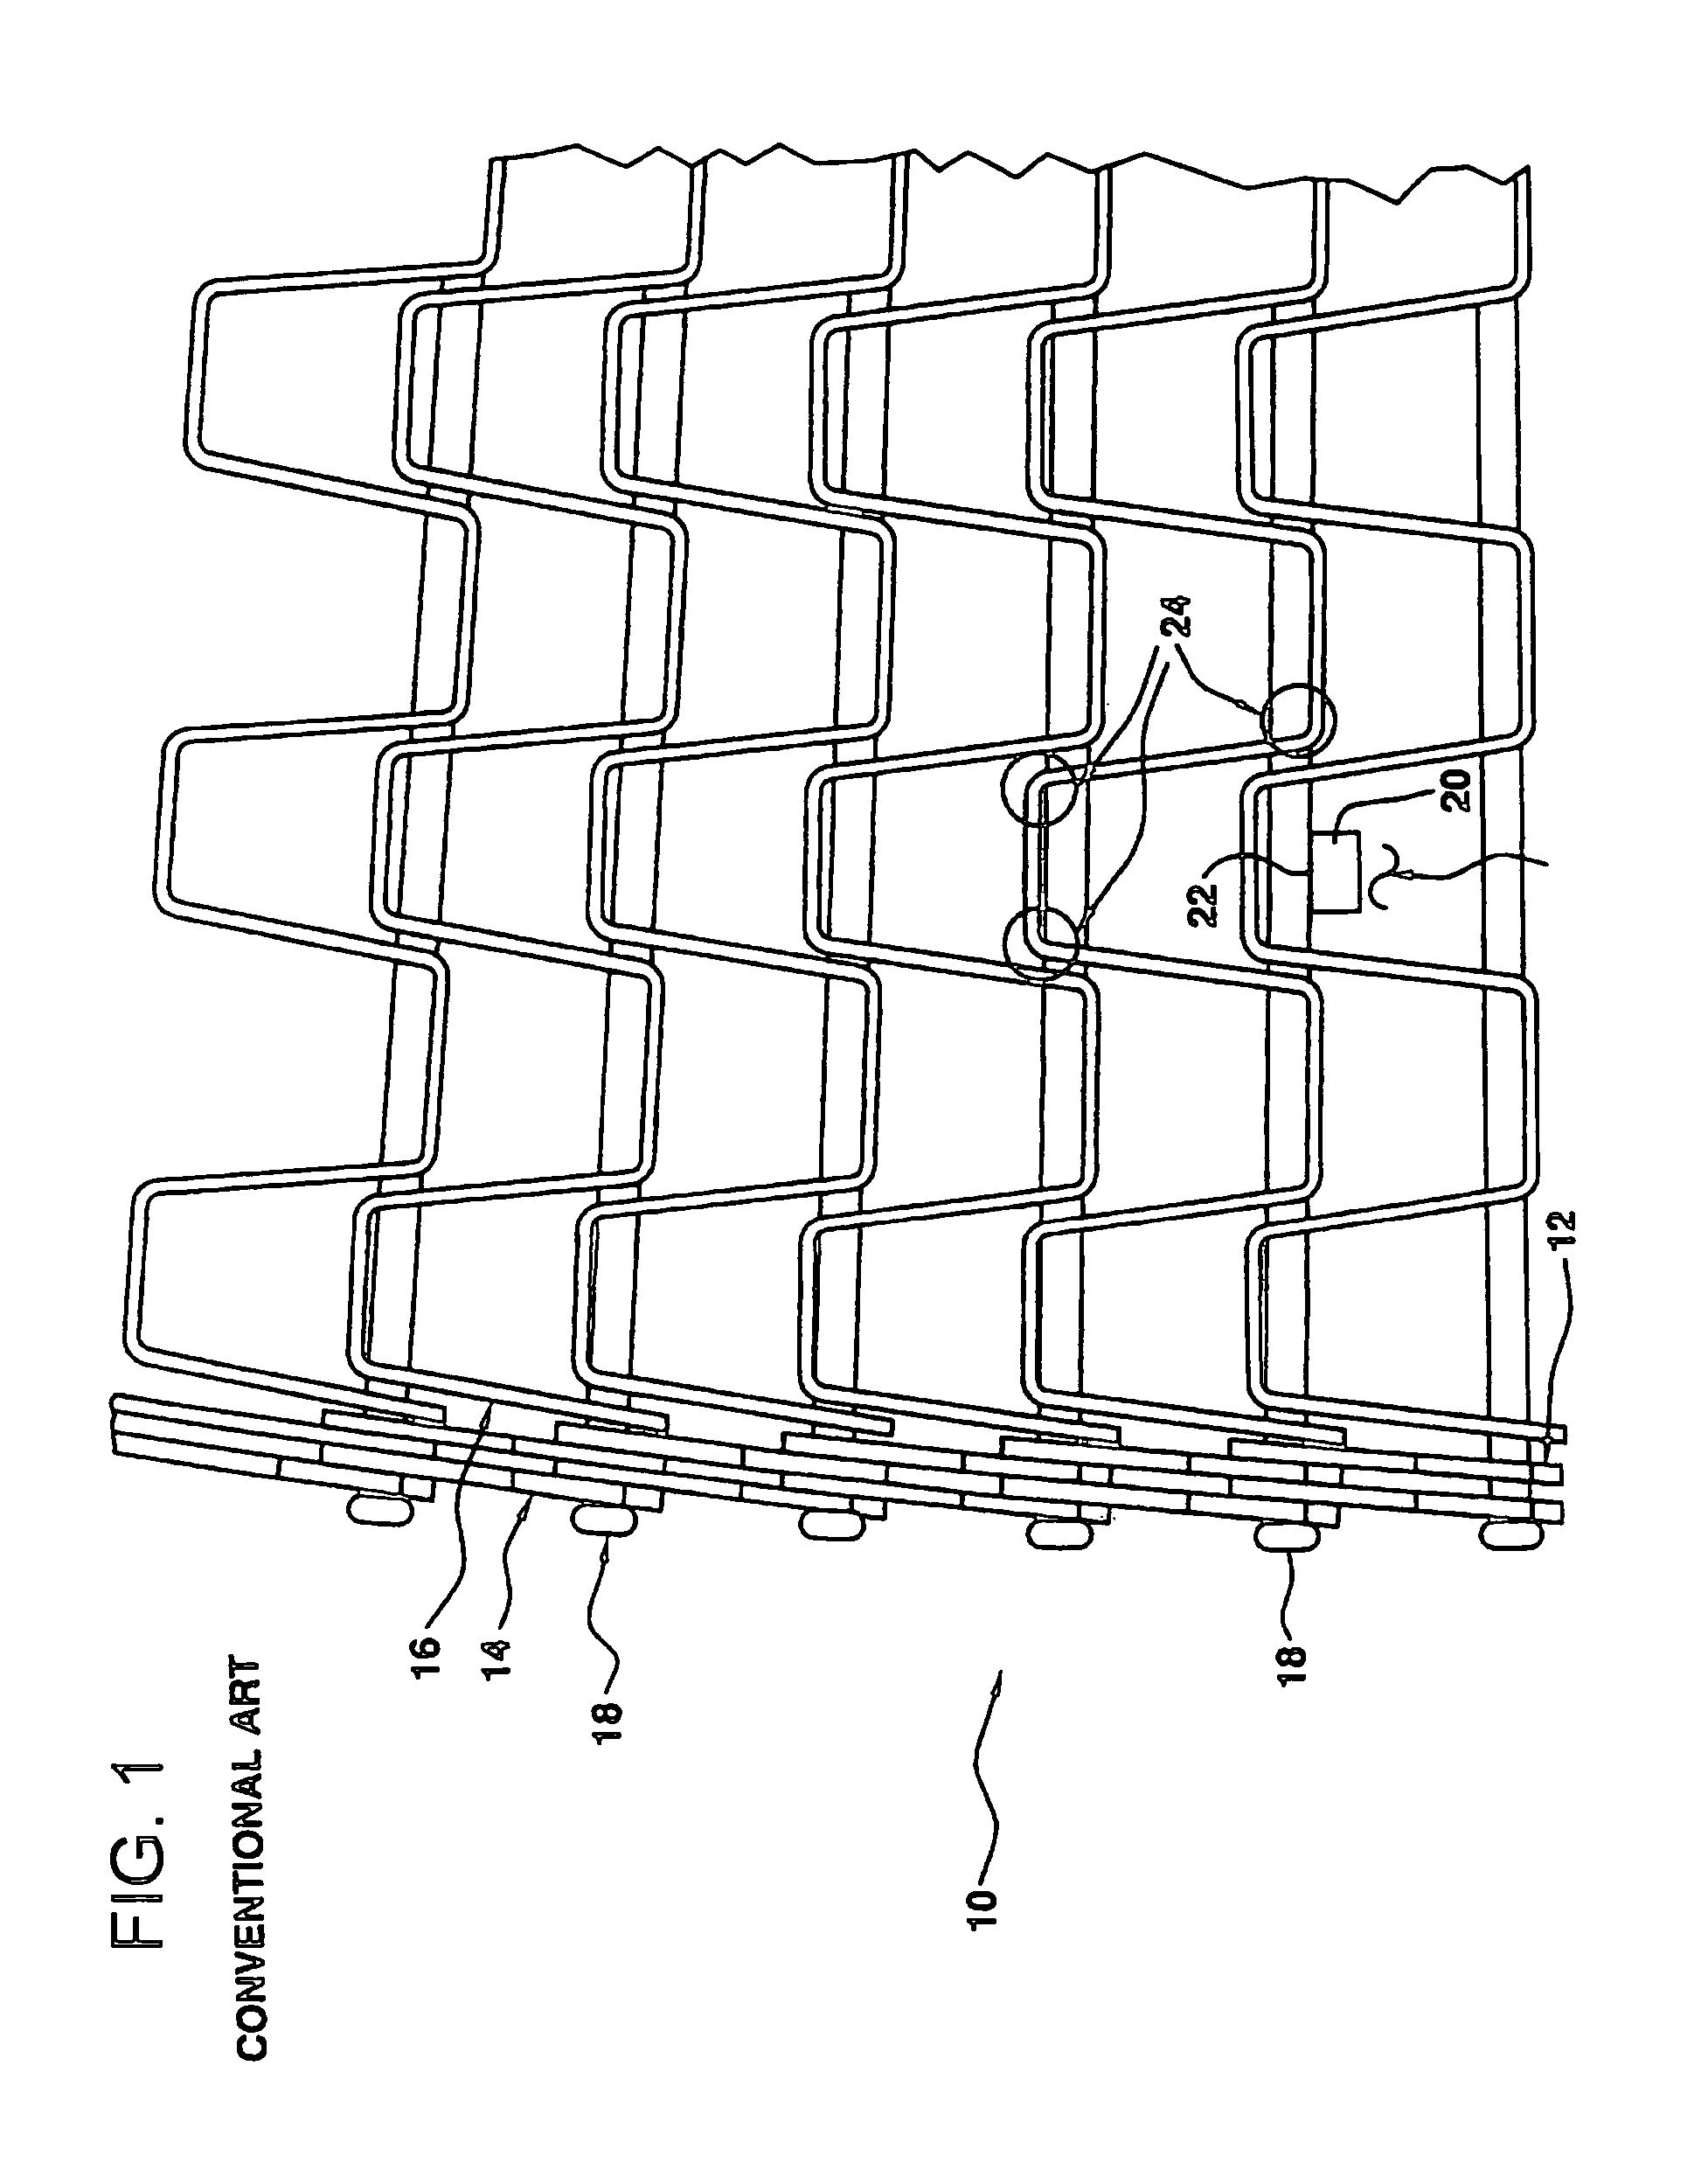 Variable spaced conveyor belt